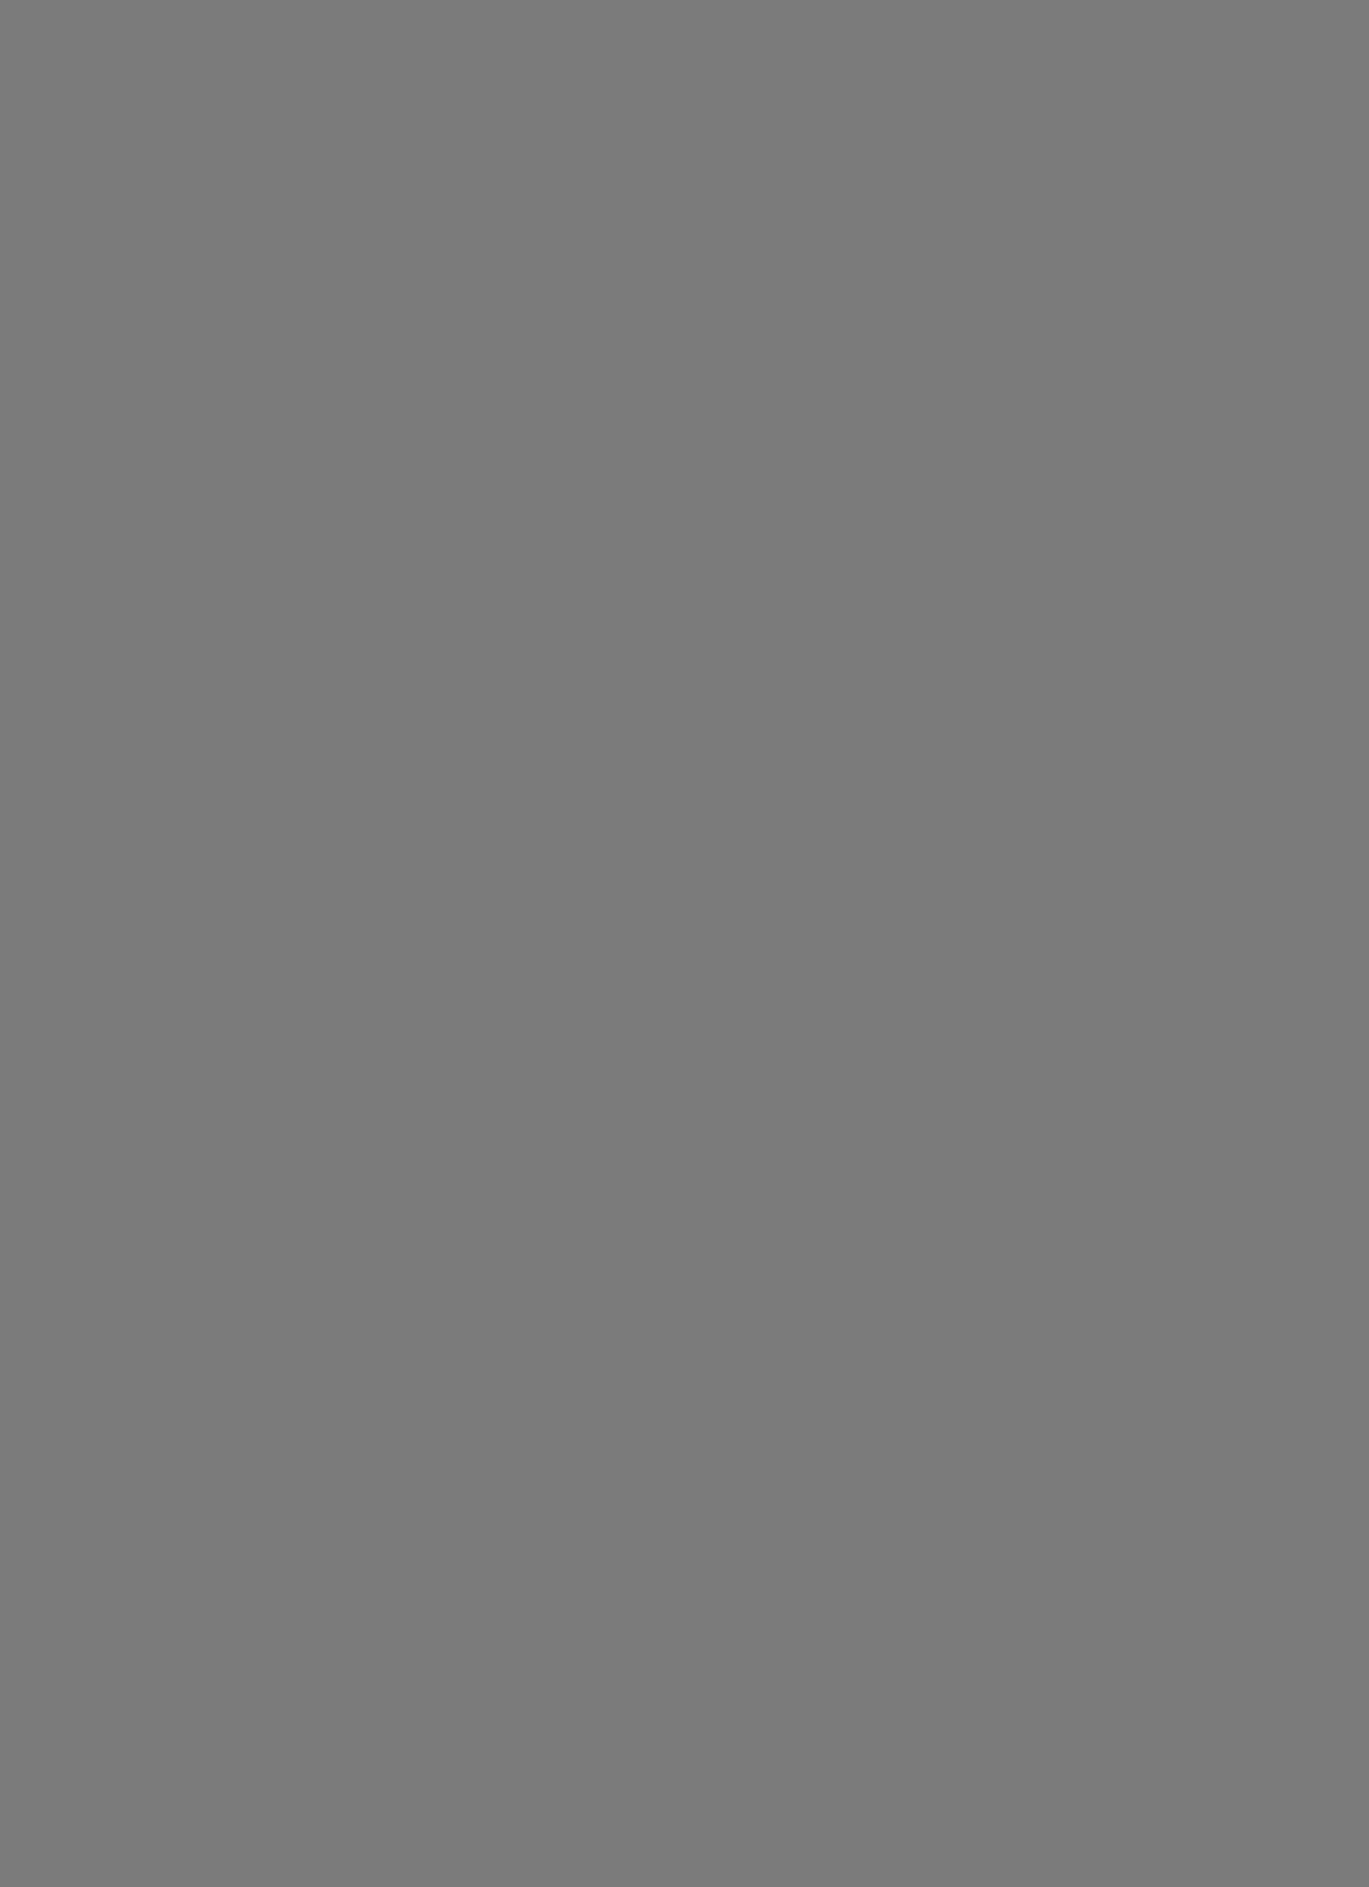 Александр Родченко. Евгения Соколова (Жемчужная) демонстрирует спортивный костюм спроектированный Варварой Степановой. 1924. Фотография: casual-info.ru